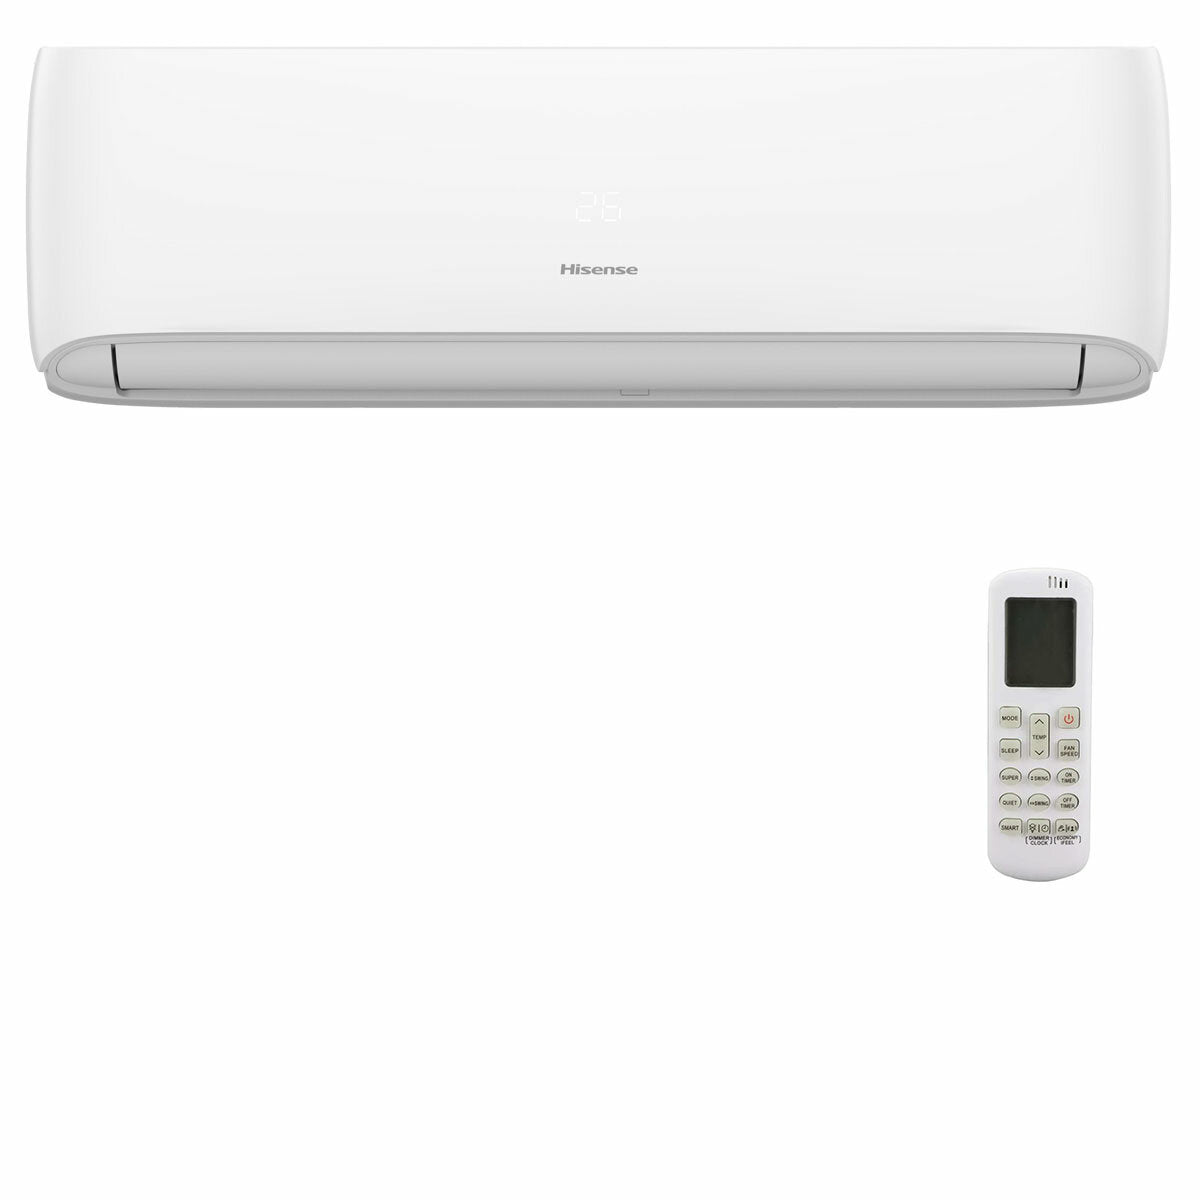 Hisense Hi-Comfort quadri split air conditioner 9000 + 9000 + 9000 + 24000 BTU wifi inverter outdoor unit 12.5 kW